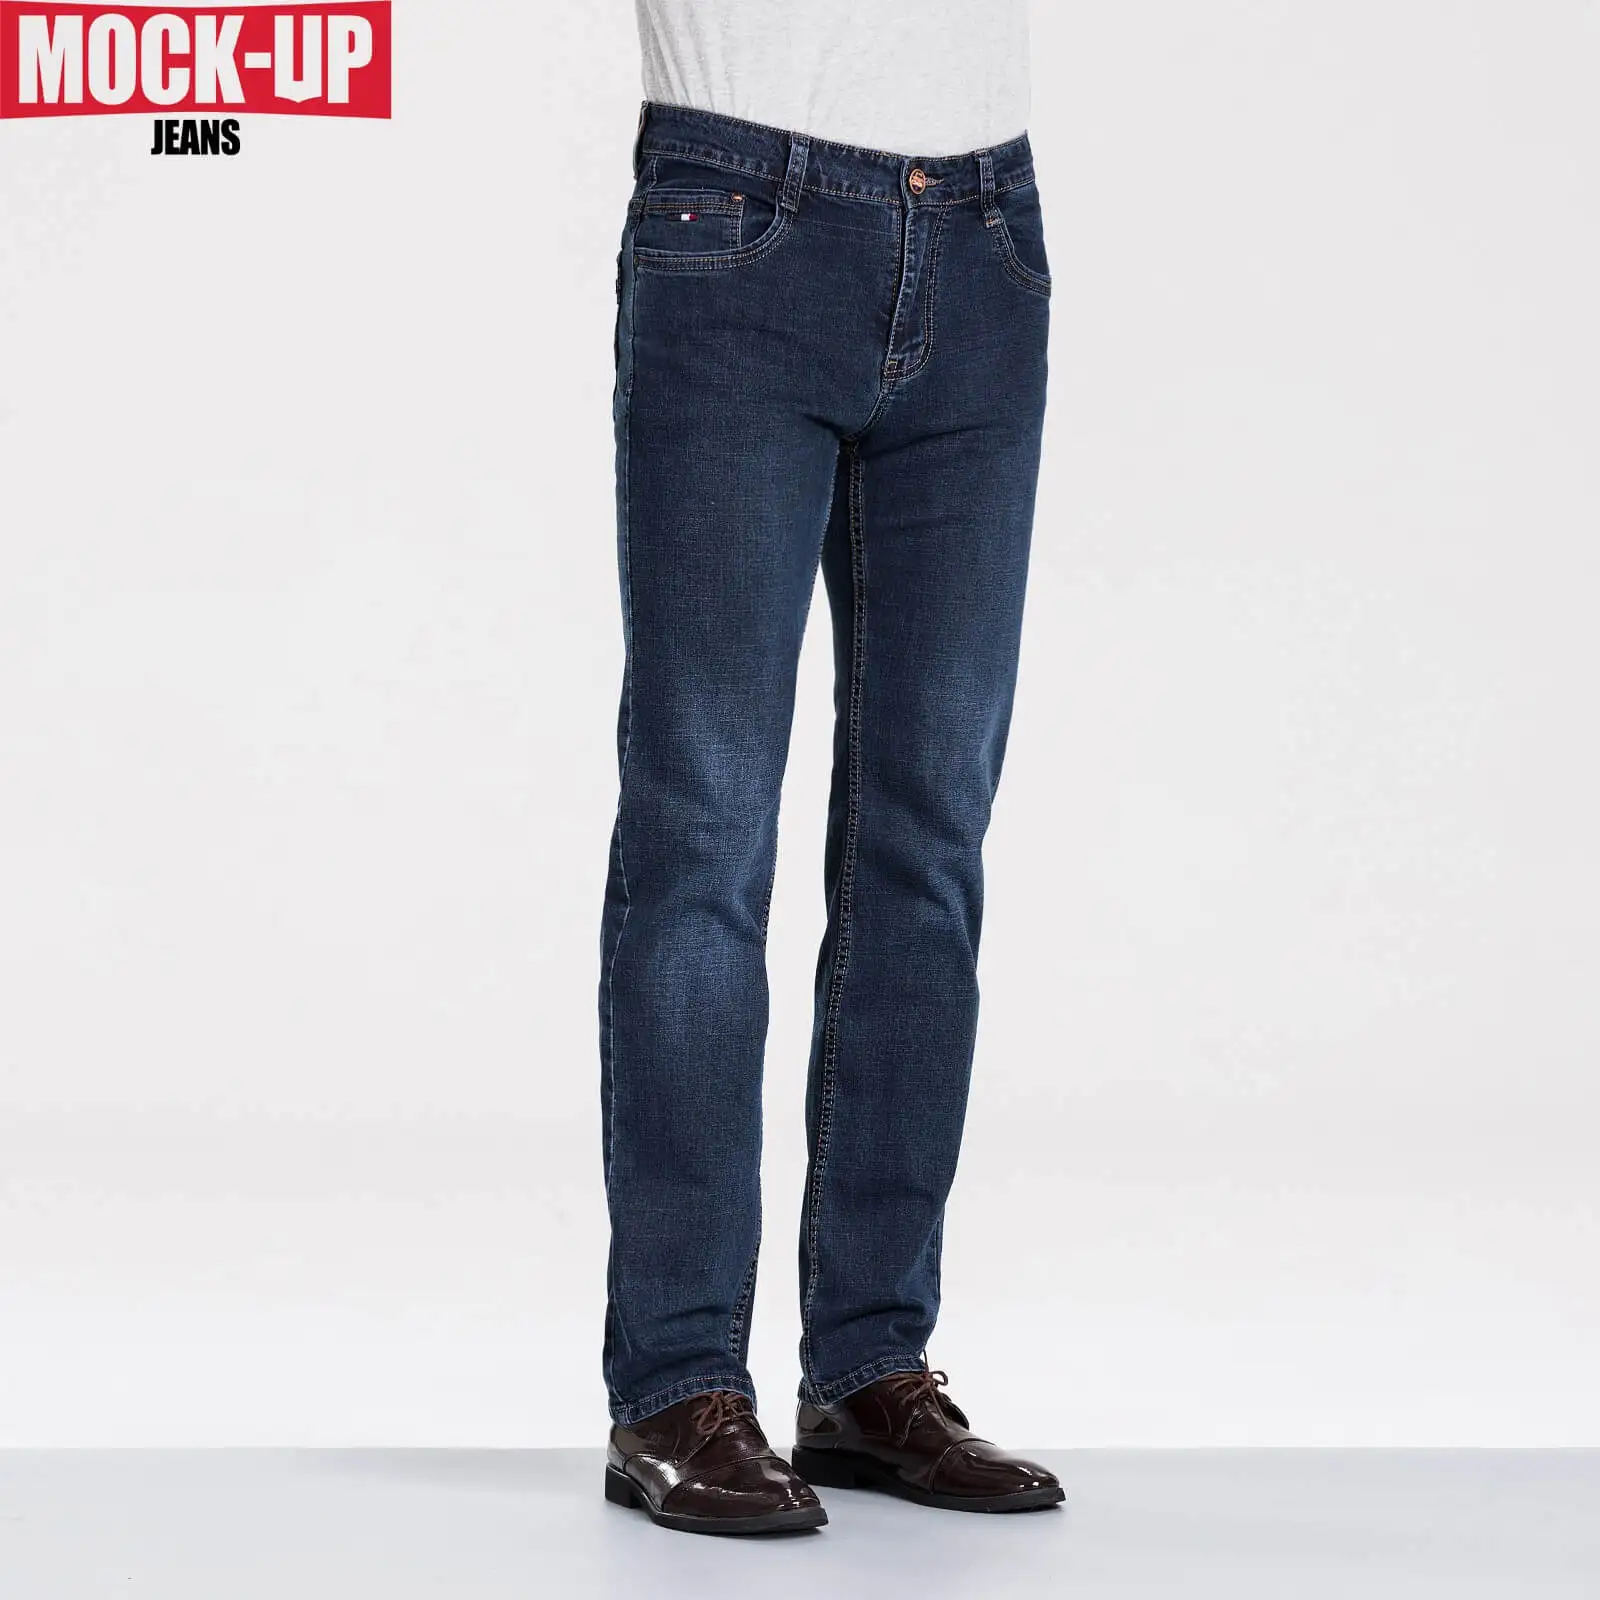 MOCK UP брендовые черные джинсы джинсовые байкерские слегка расклешенные узкие дизайнерские новые модные джинсы homme стиль dsq джинсы Горячая Распродажа